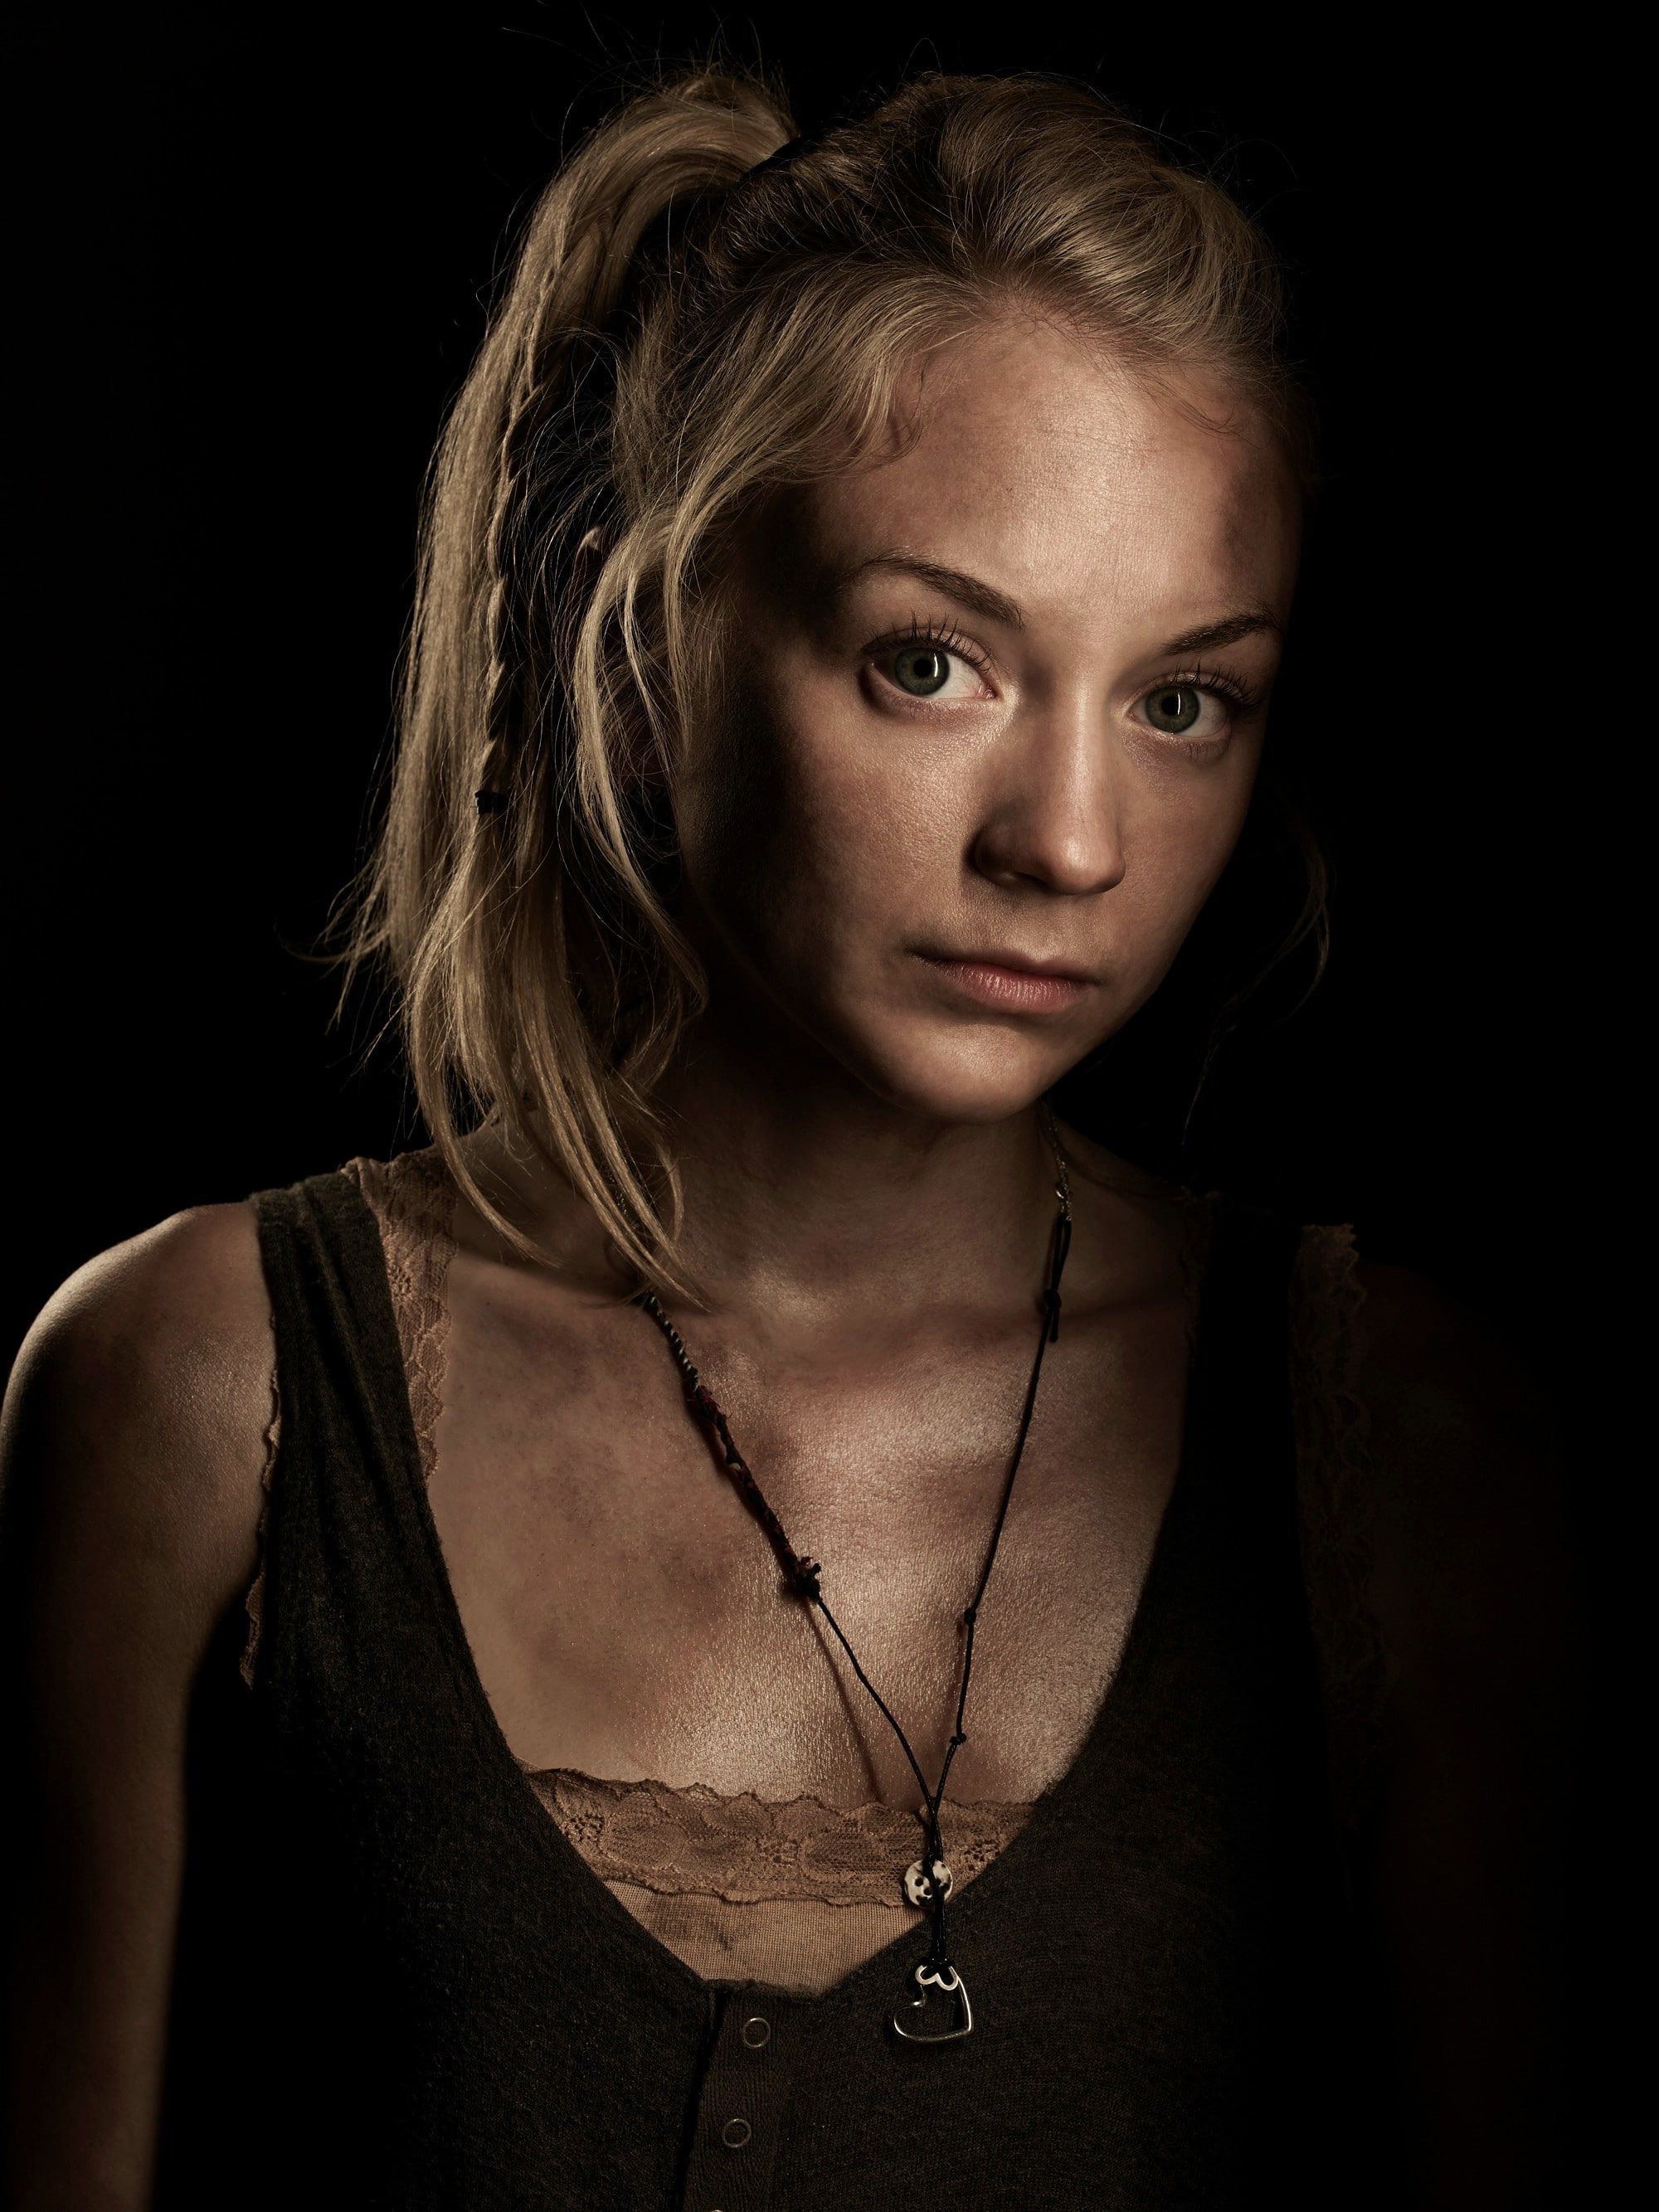 Beth Greene, Emily Kinney, The Walking Dead, portrait, black background